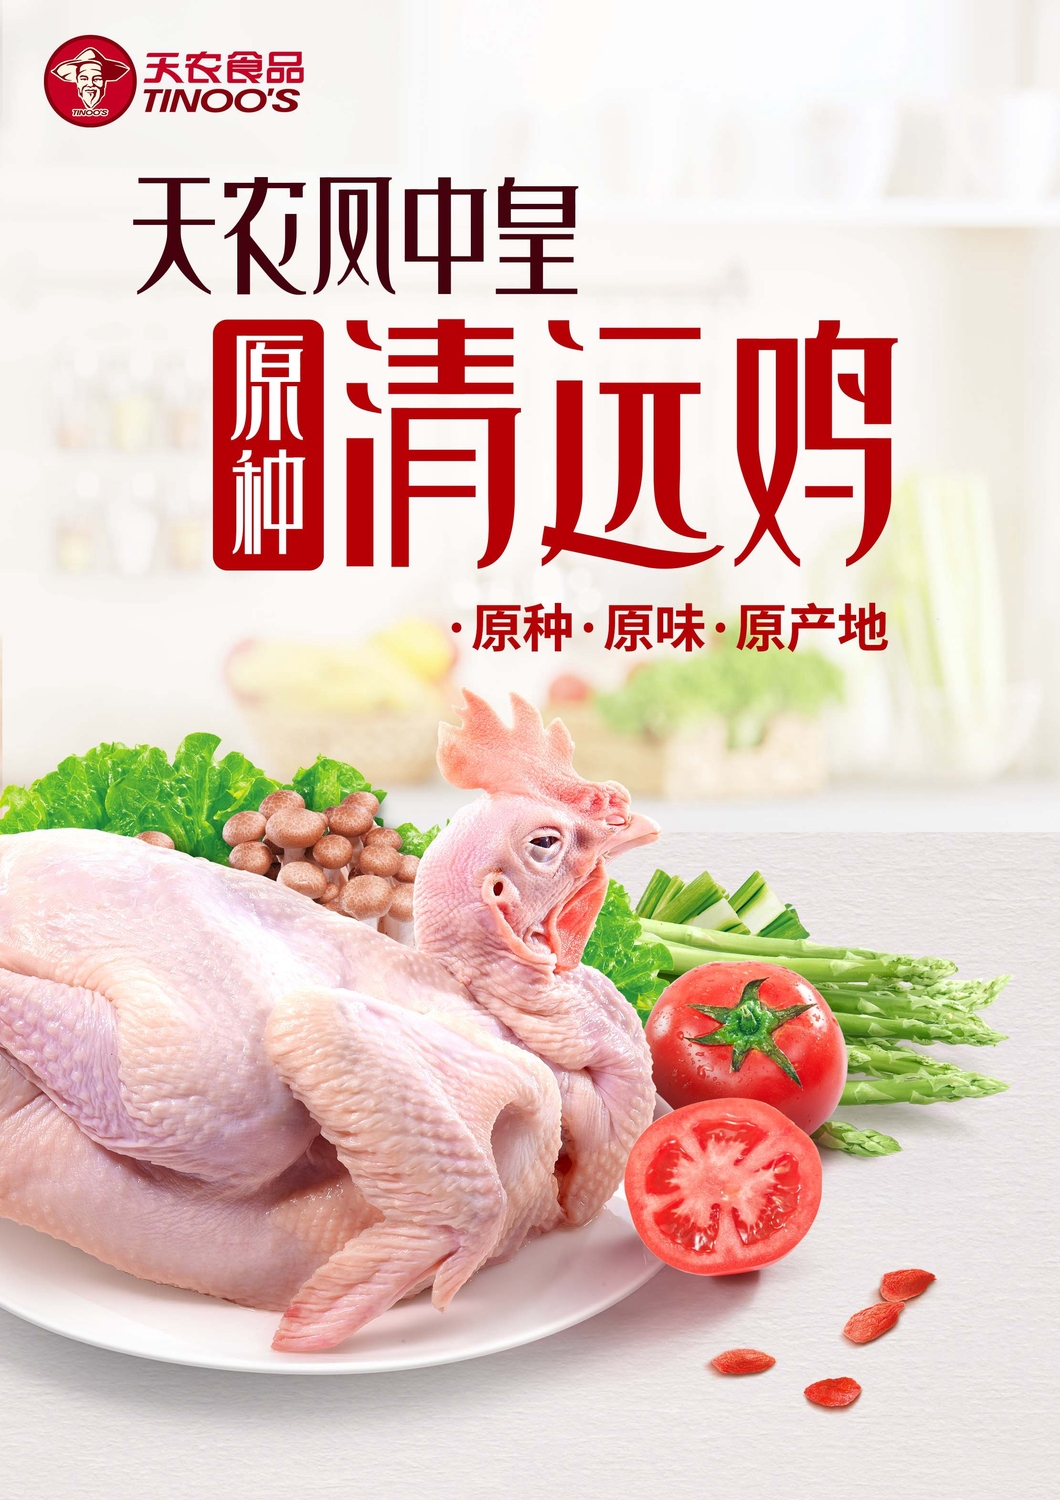 天农清远鸡宣传广告图片 (1).jpg